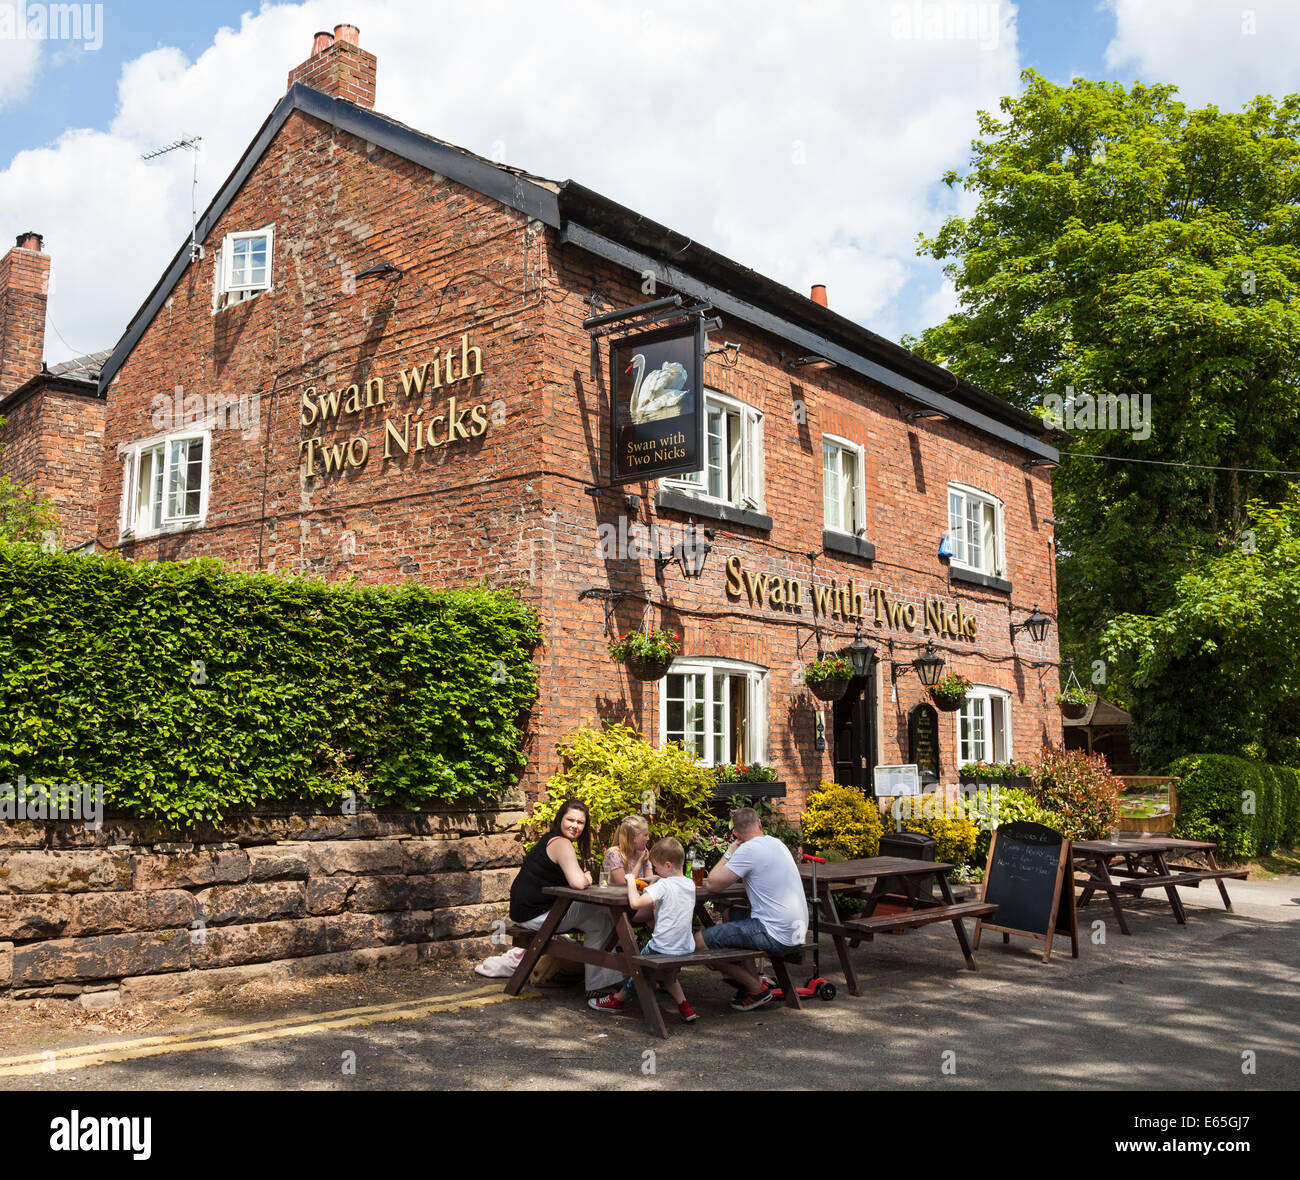 Le cygne avec deux entailles public house ou pub à Little Bollington Cheshire England UK Banque D'Images